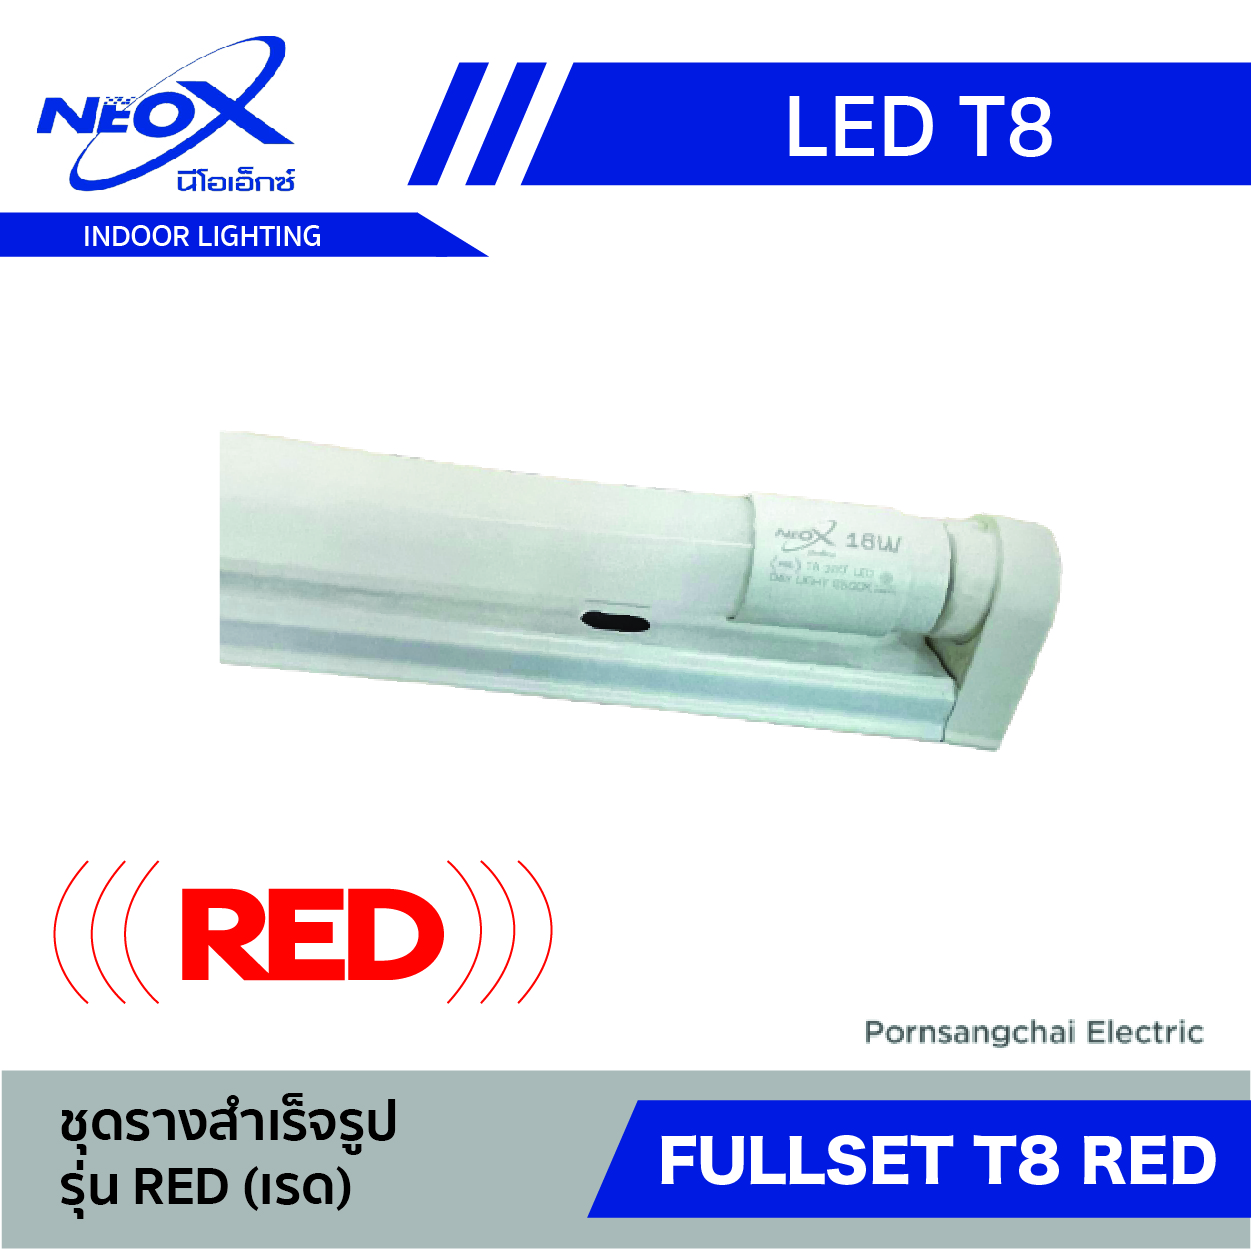 ชุดเซ็ต LED T8 NEOX รุ่น Red